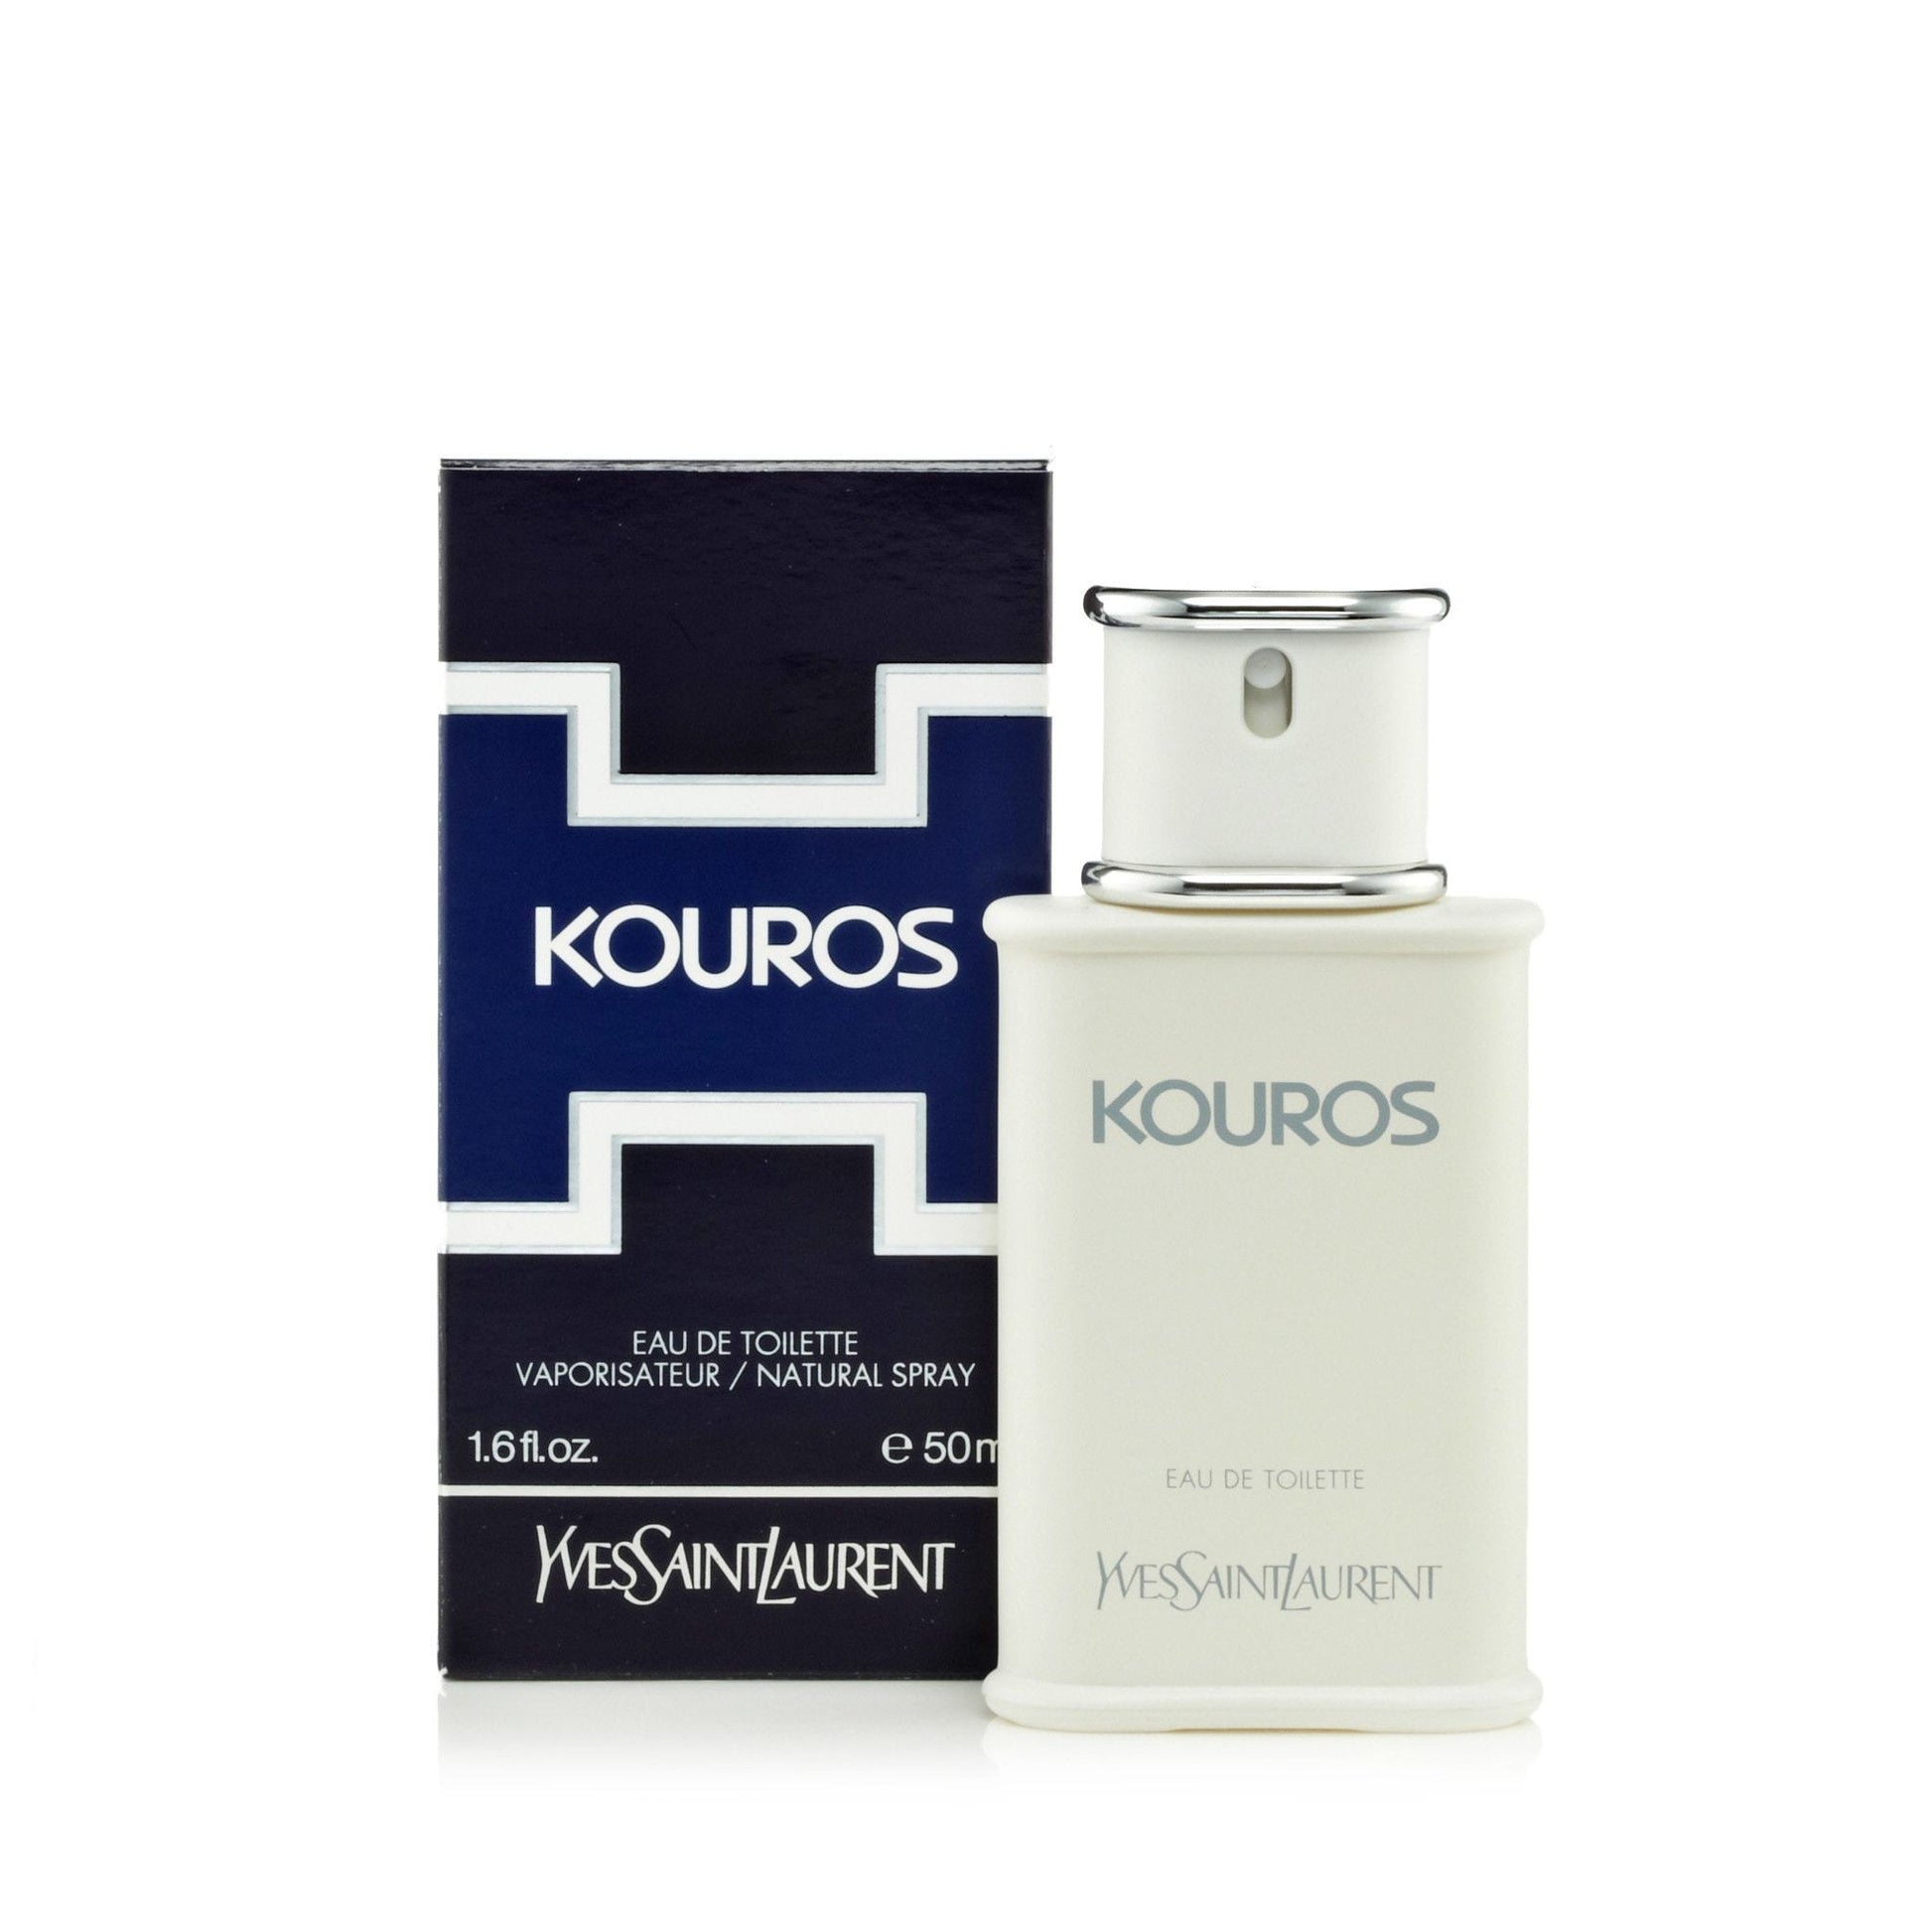 Kouros Eau de Toilette Spray for Men by Yves Saint Laurent, Product image 4